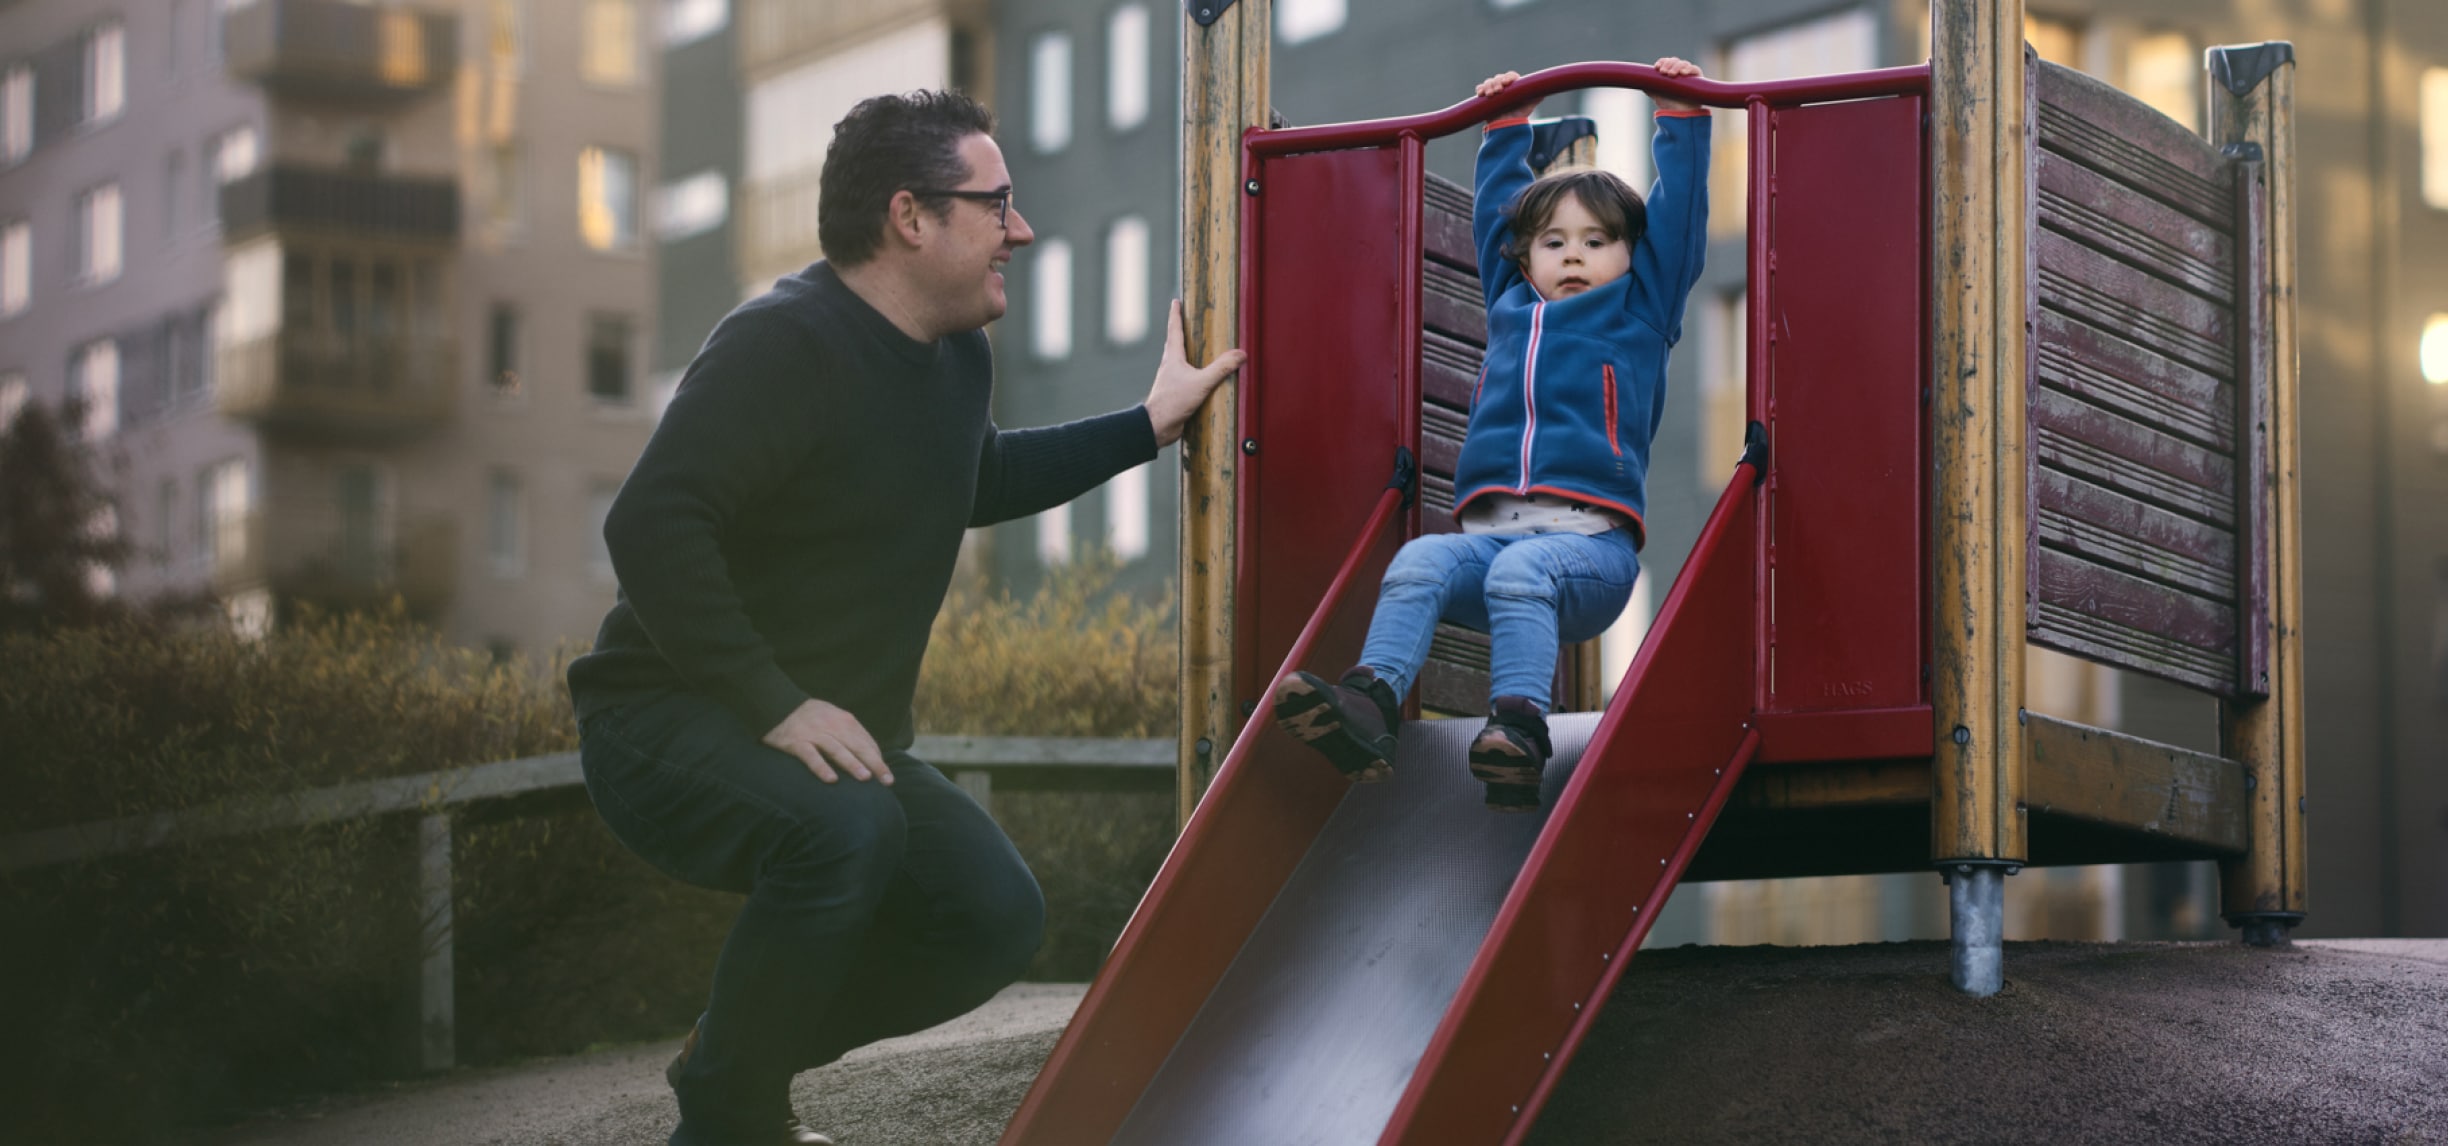 Un hombre sonríe a un niño que baja por un tobogán en una zona de juegos para niños.